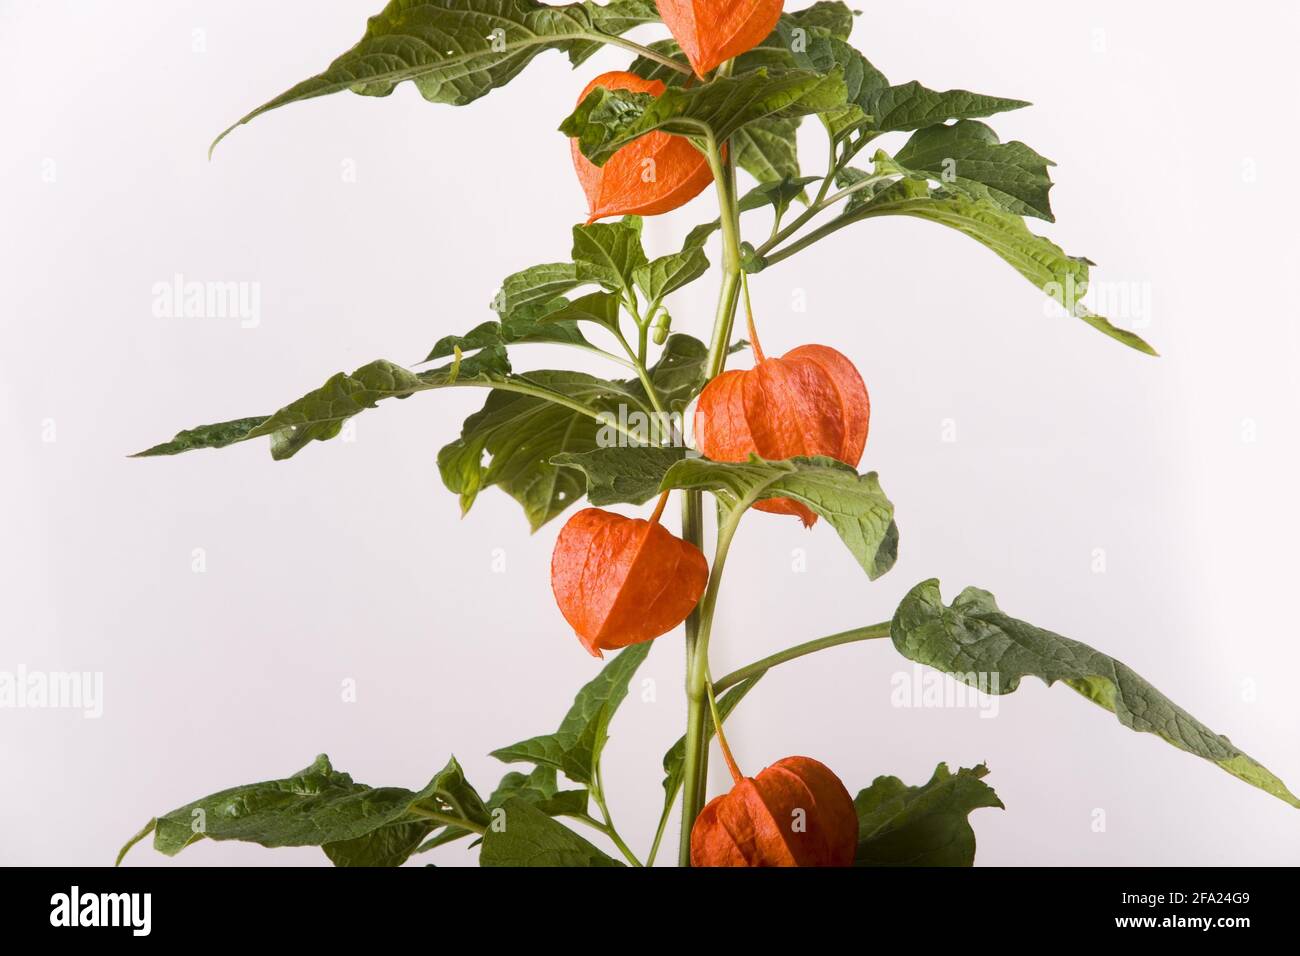 Chinese lantern, Japanese lantern, winter cherry, strawberry tomato (Physalis alkekengi var. franchetii, Physalis franchetii), with fruits Stock Photo